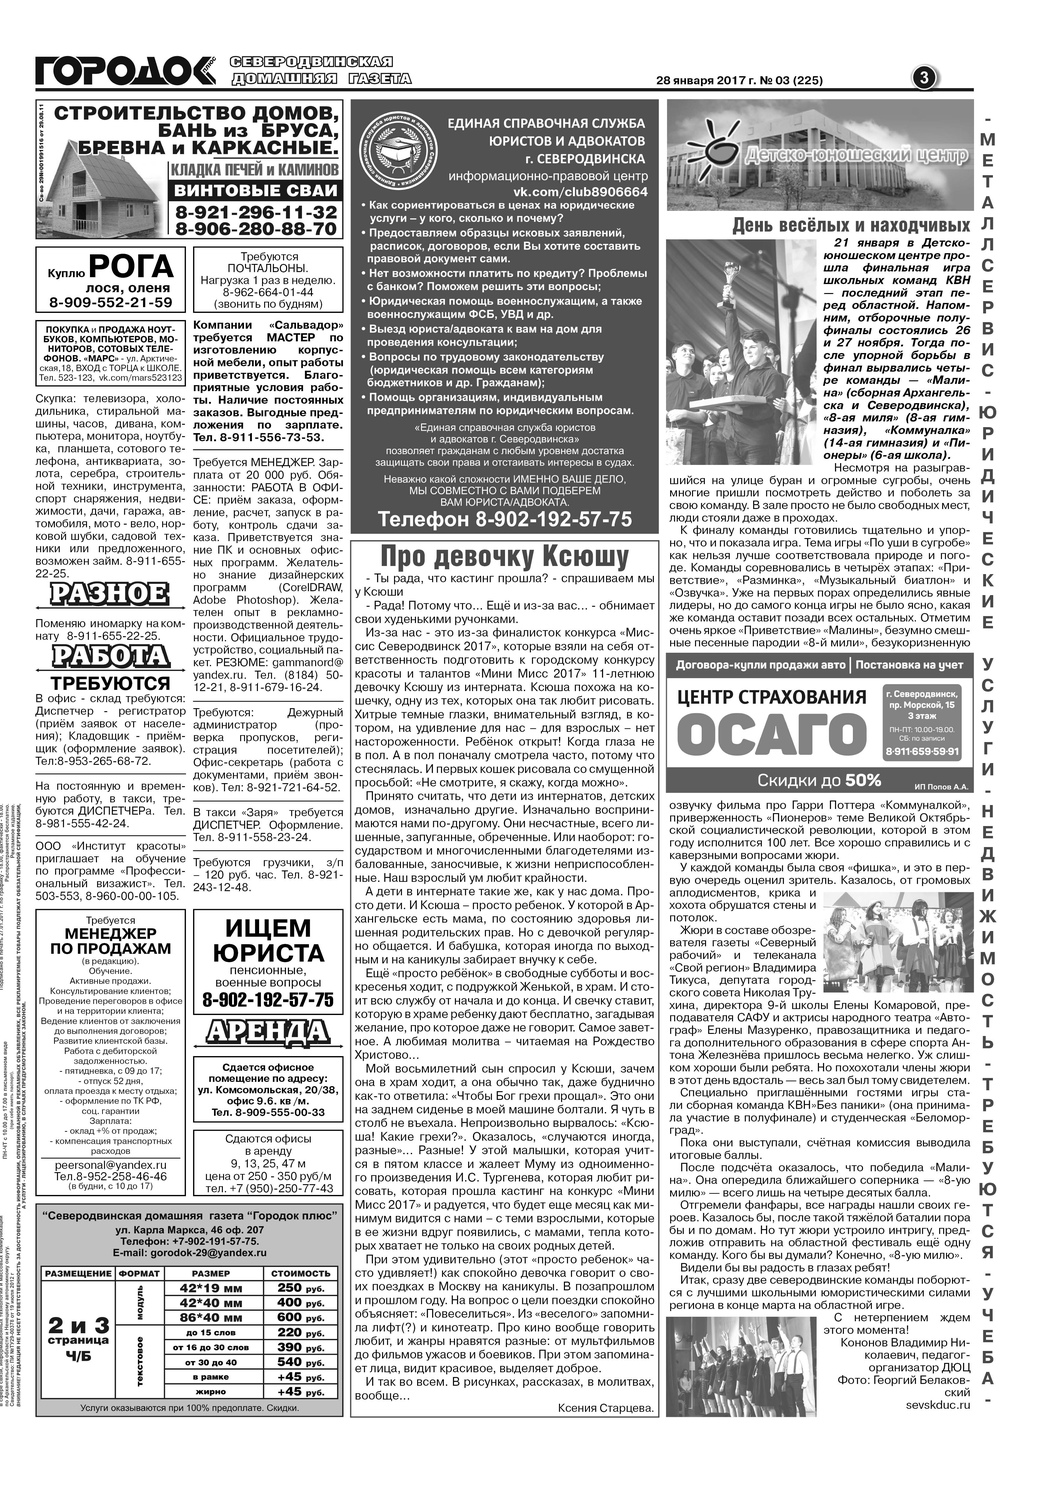 Городок плюс, выпуск номер 3 от 28 января 2017 года, страница 3.